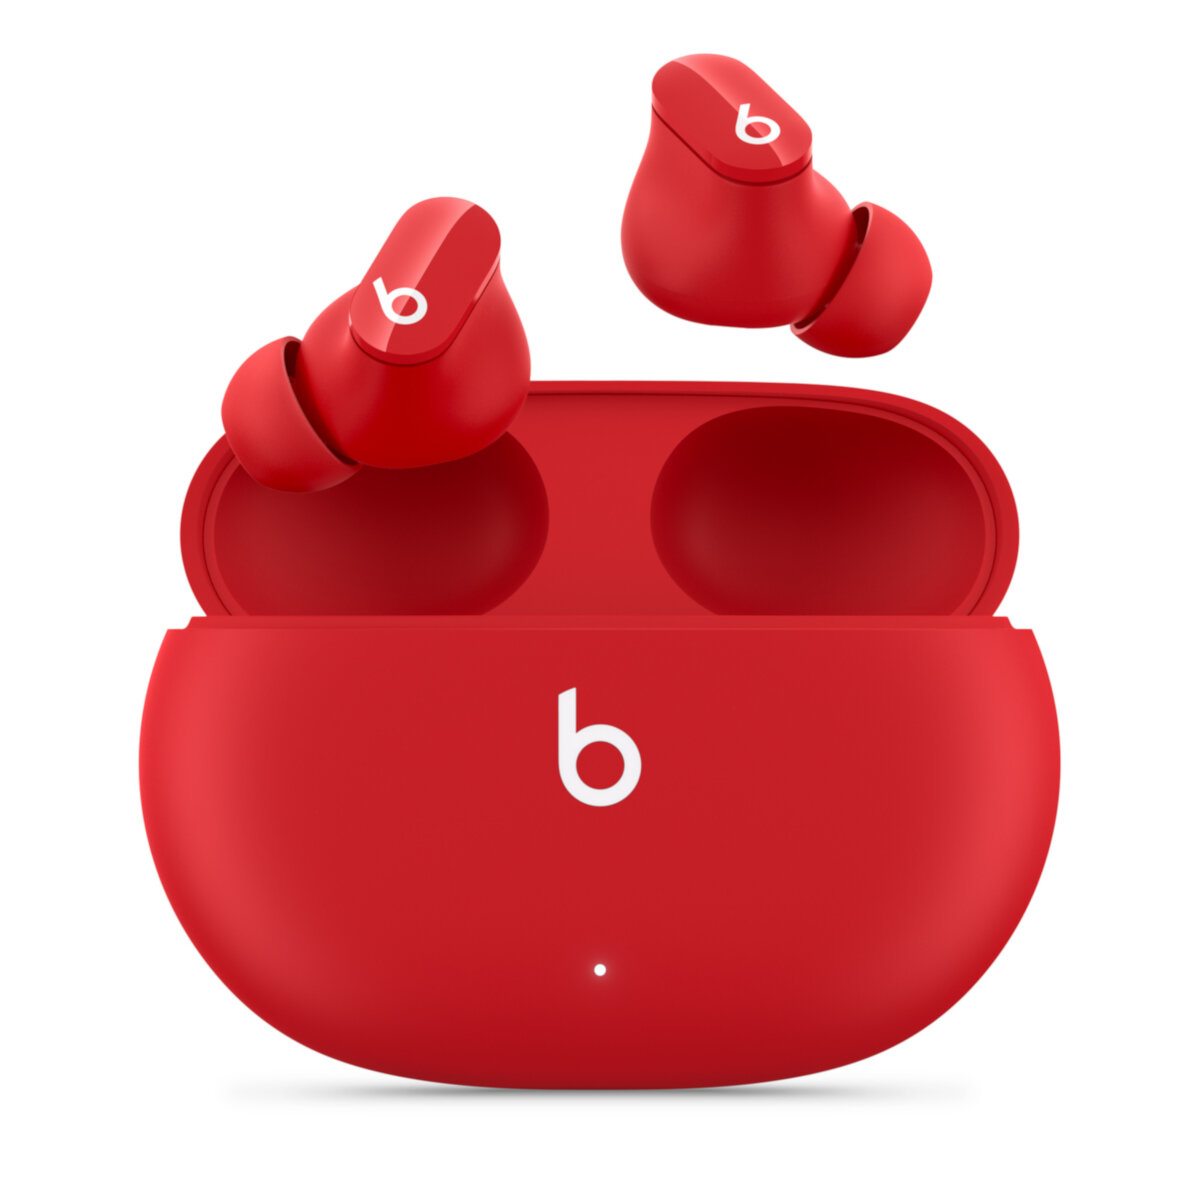 Słuchawki Beats Studio Buds czerwone, grafika przedstawia słuchawki oraz otwarte etuii na białym tle